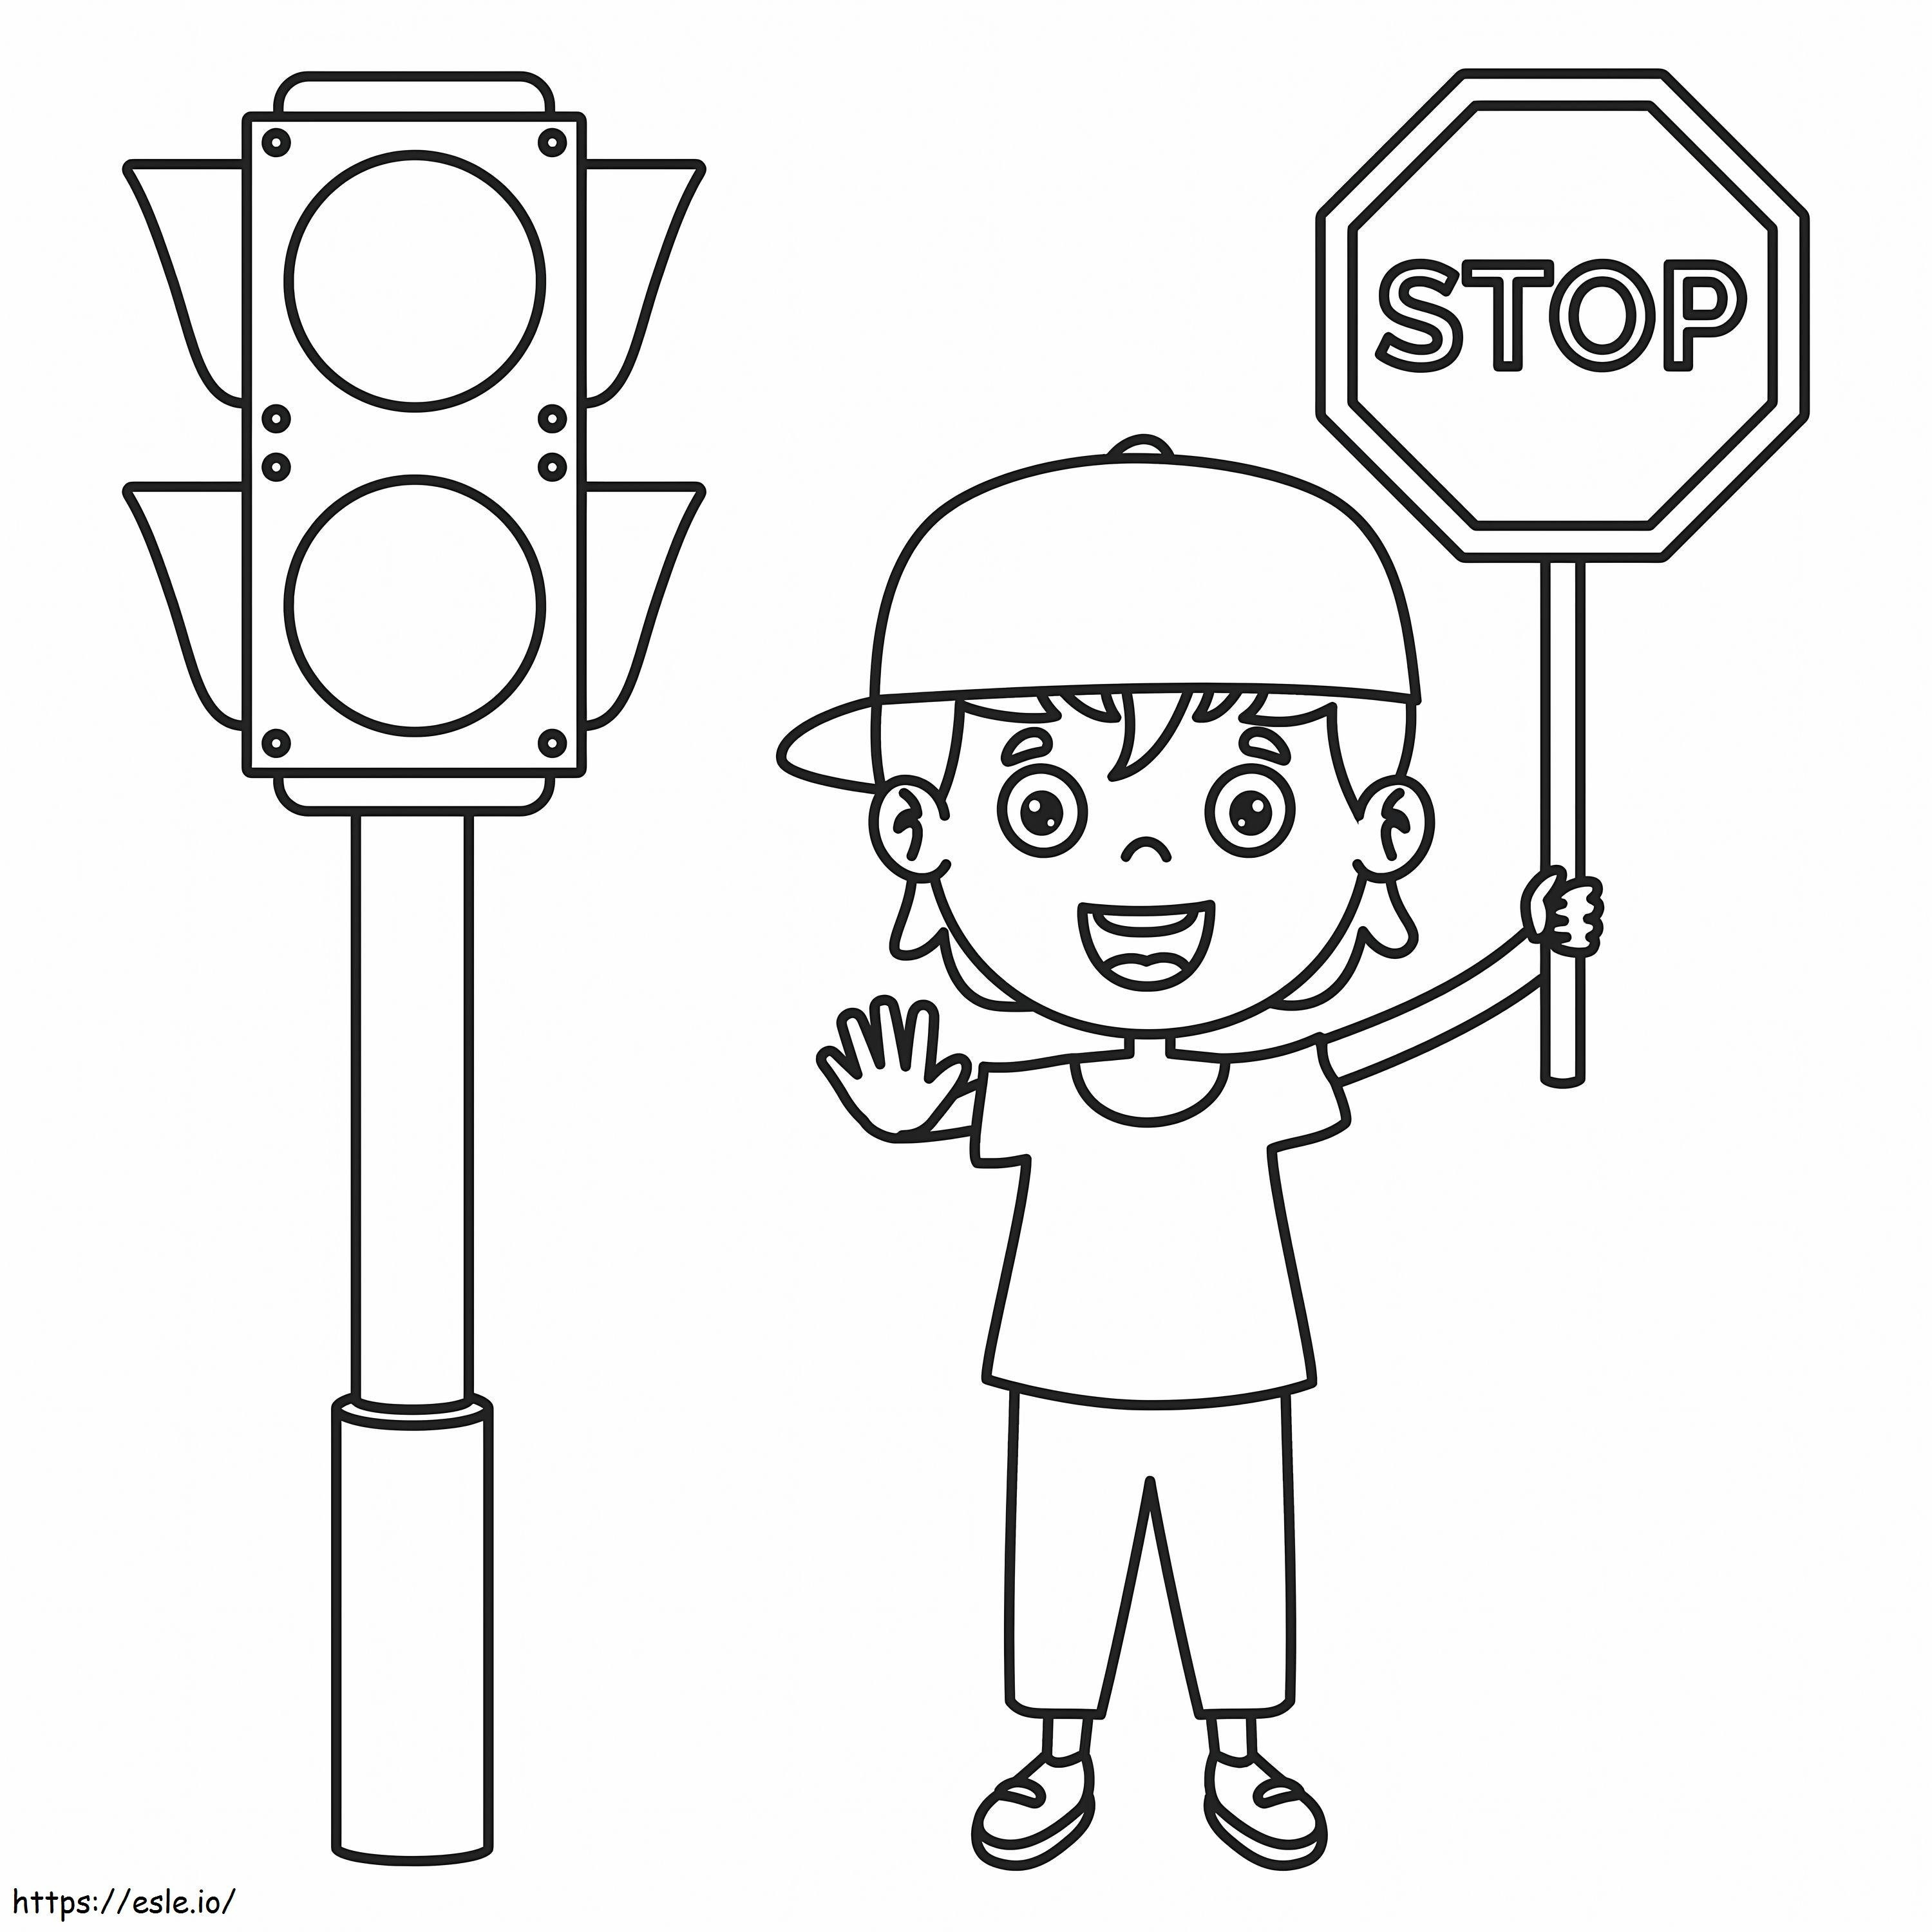 Bambino divertente con il segnale di stop e il semaforo da colorare